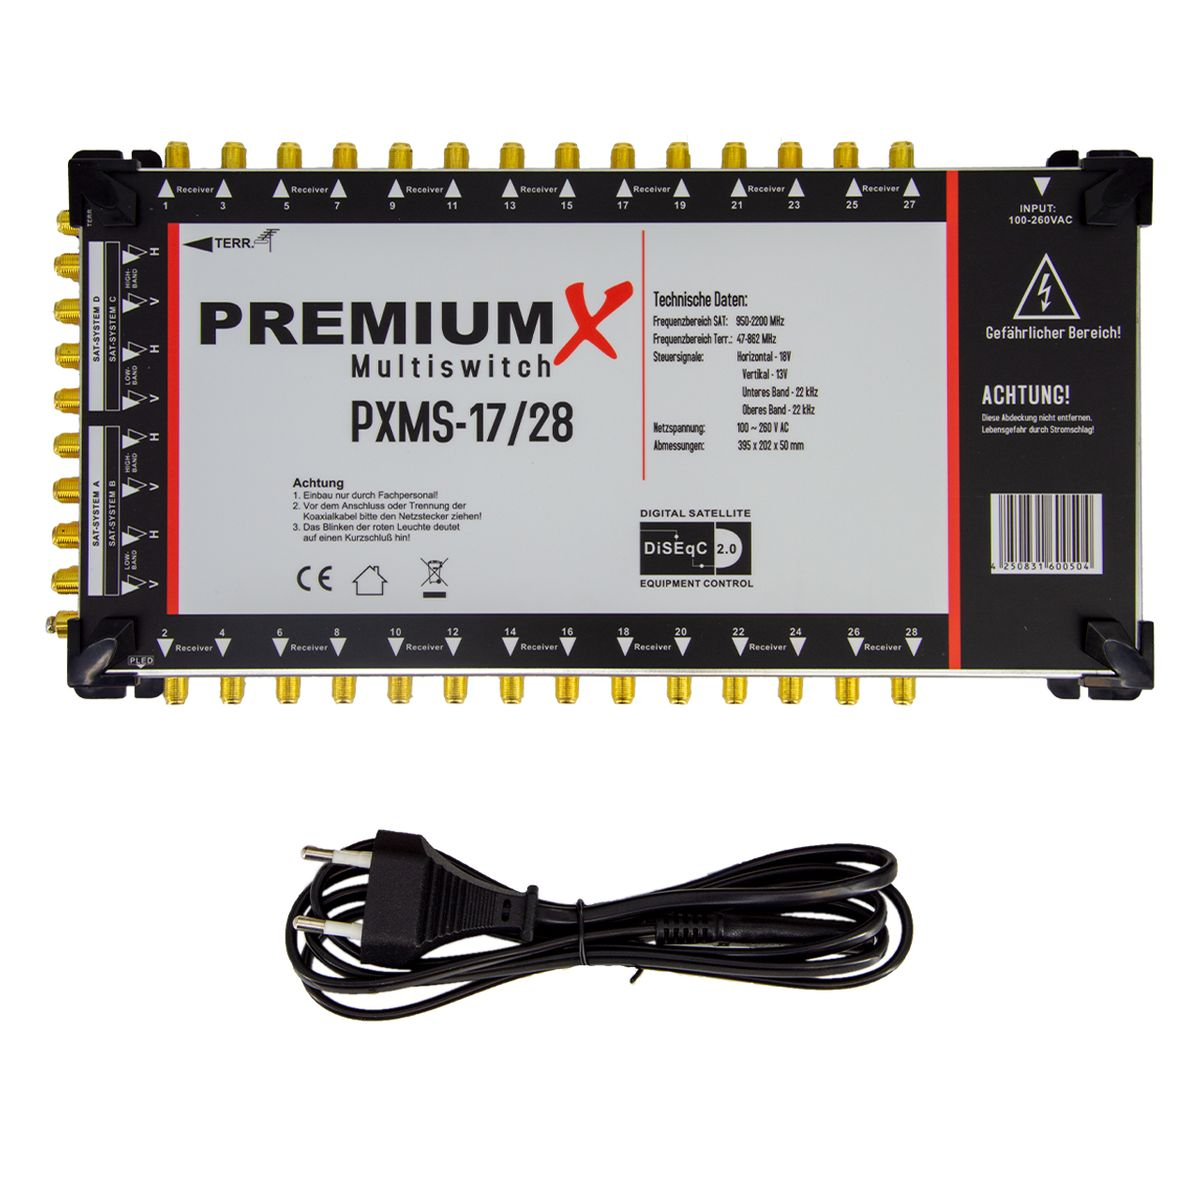 PREMIUMX PXMS 17/28 Multischalter mit 28 Netzteil Multiswitch 4 für SAT Teilnehmer Sat-Multischalter